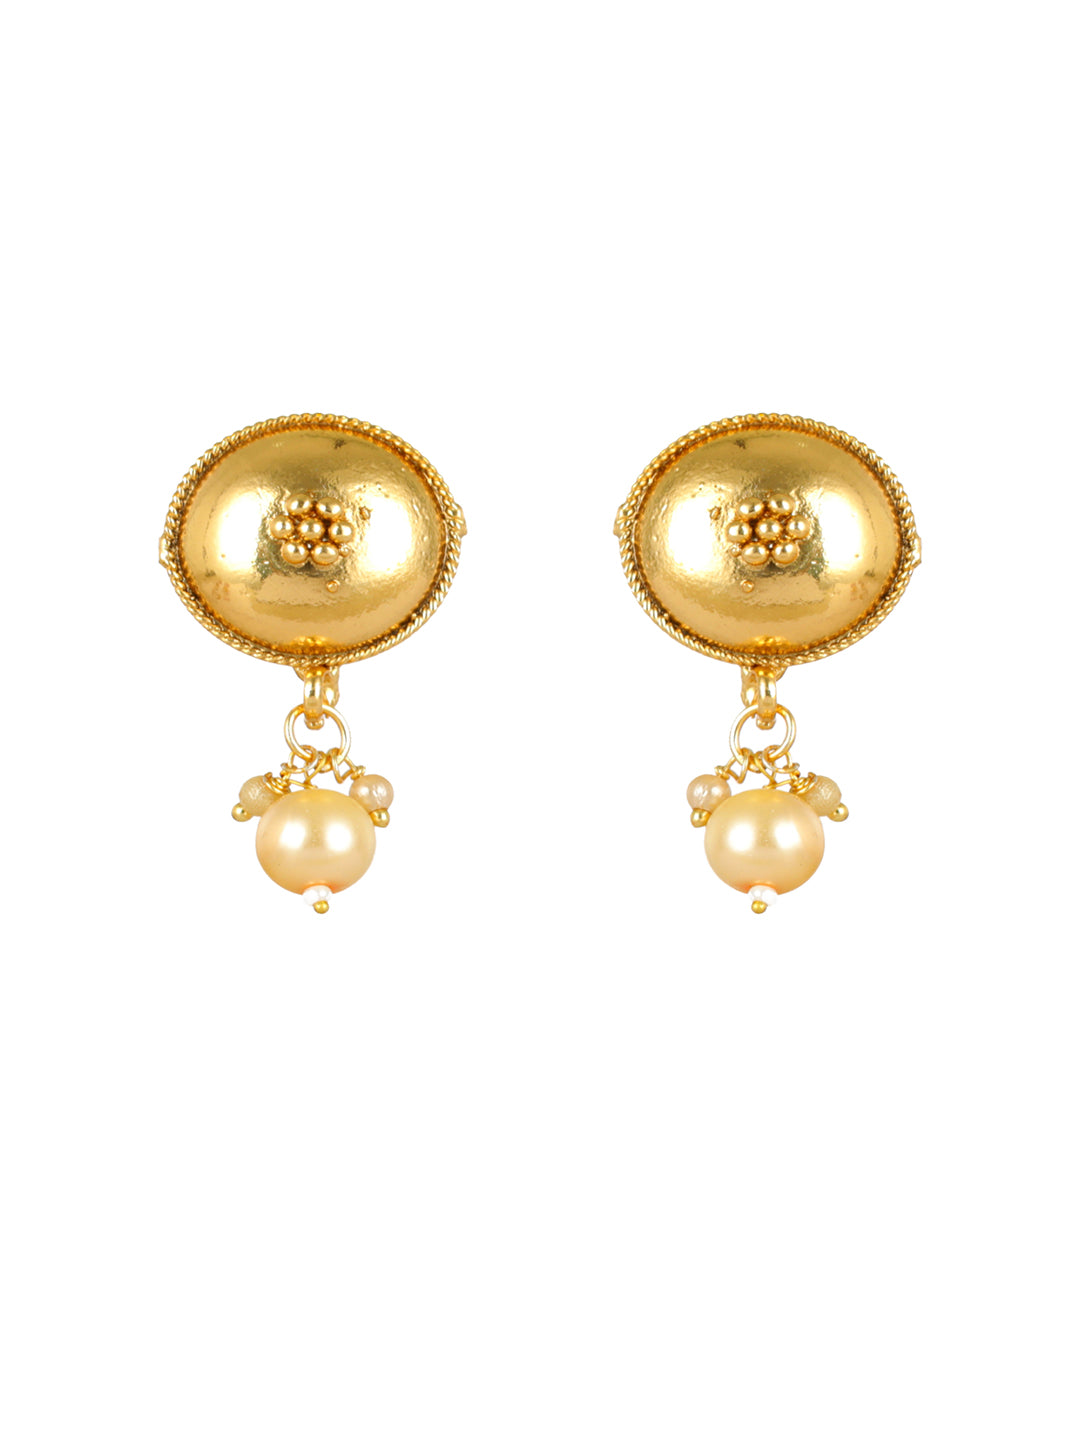 Priyaasi Sphere Links Floral Pearl Gold-Plated Jewellery Set